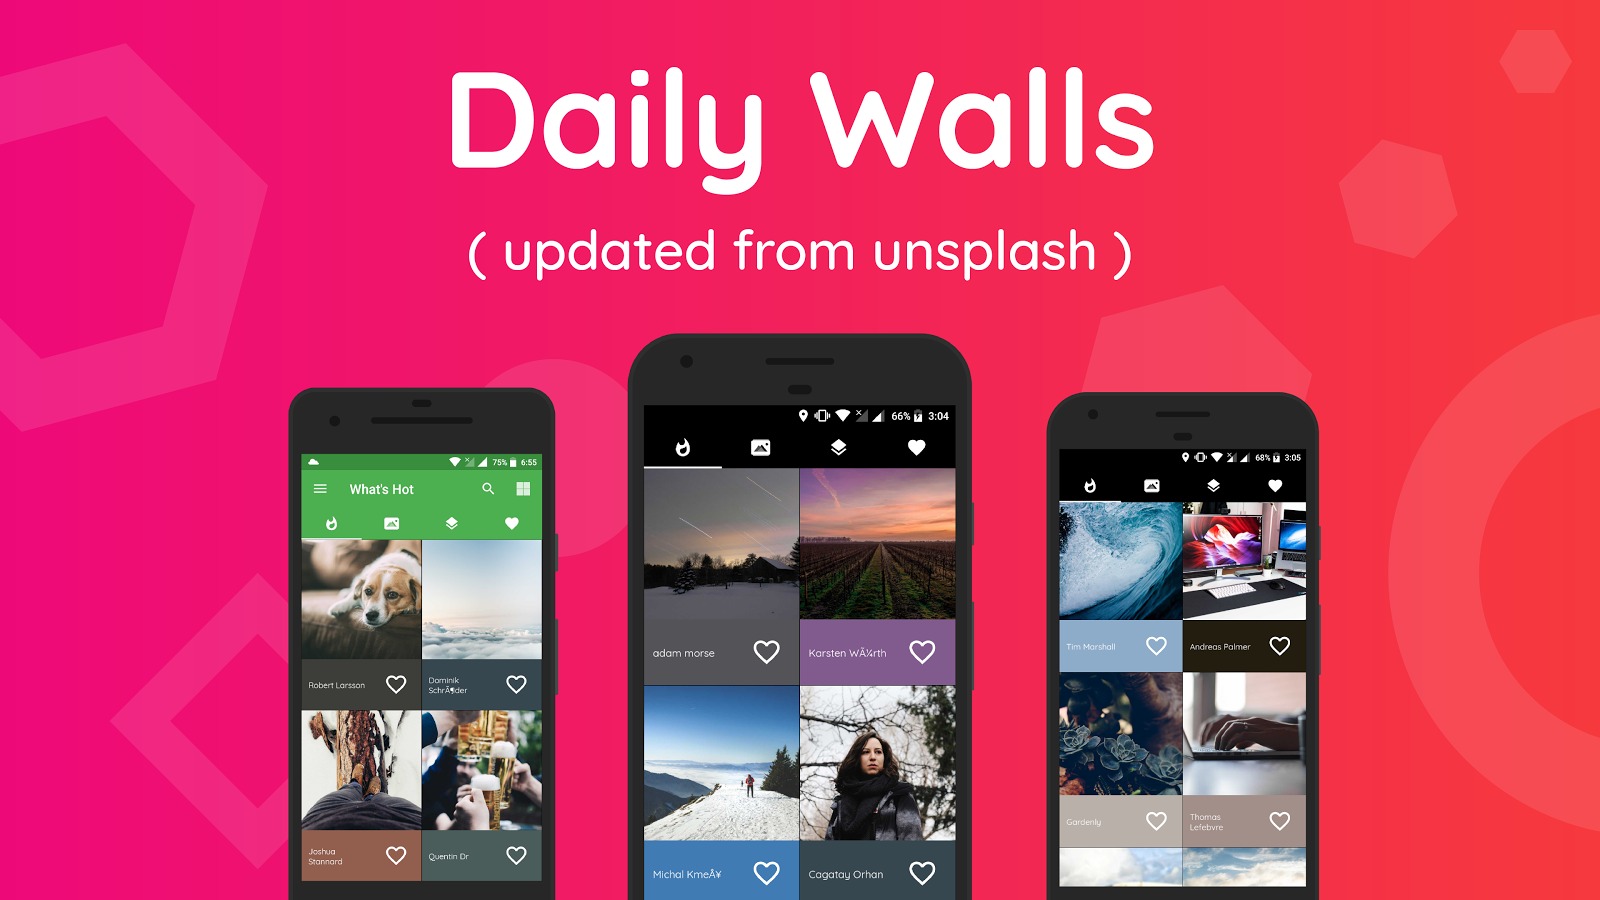 Ứng dụng tải ảnh nền Wallzy Pro đang được miễn phí trên Google Play trong thời gian ngắn